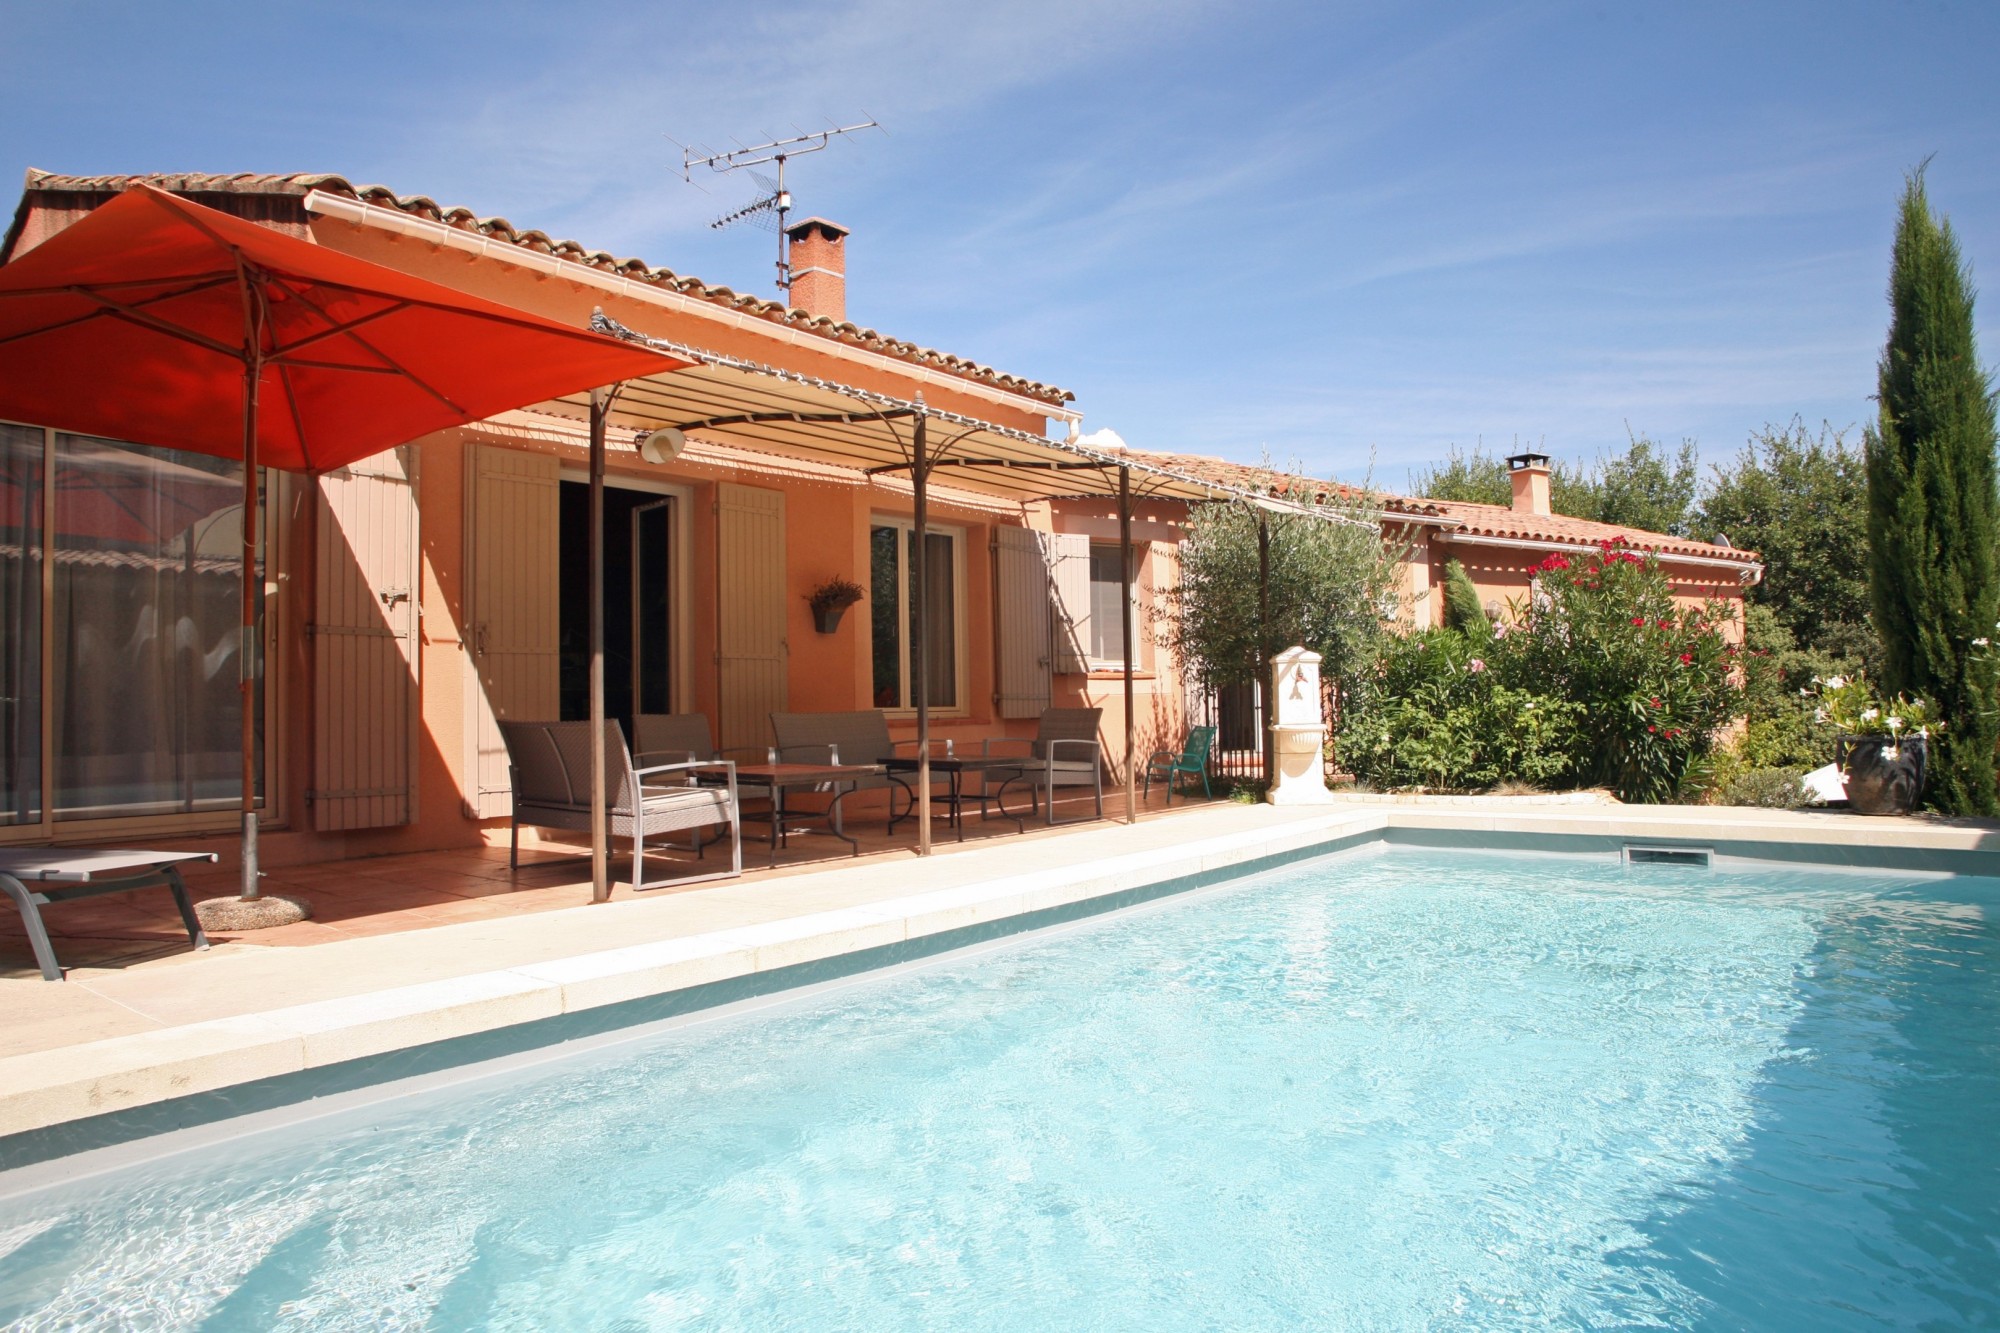 Location Roussillon, maison récente à louer, dans un hameau calme et ombragé, avec accès Tennis